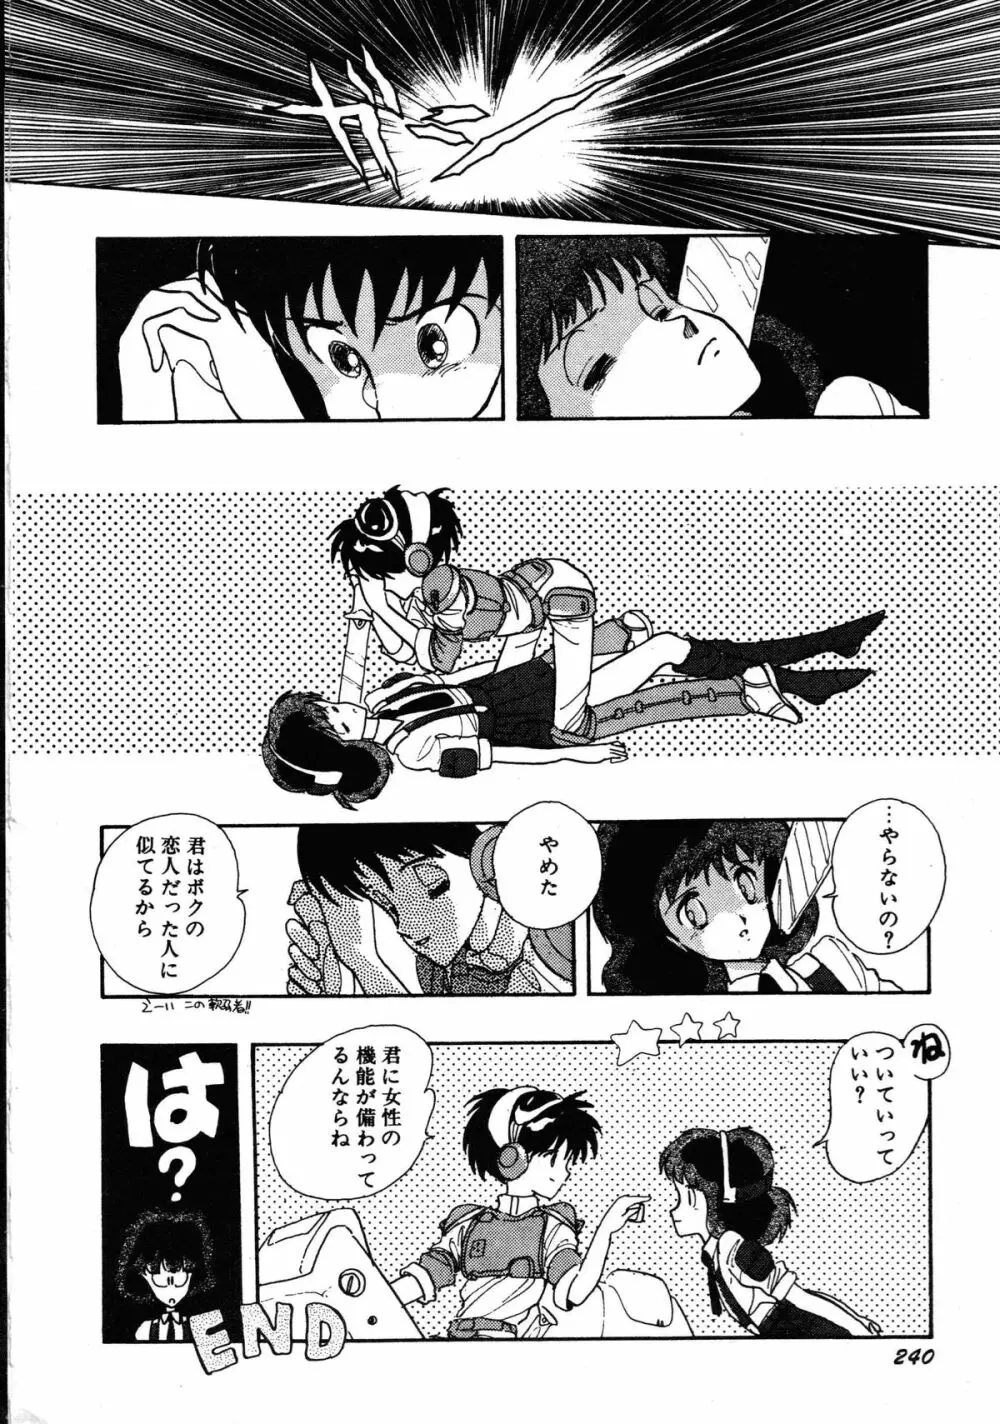 ロボット&美少女傑作選 レモン・ピープル1982-1986 244ページ